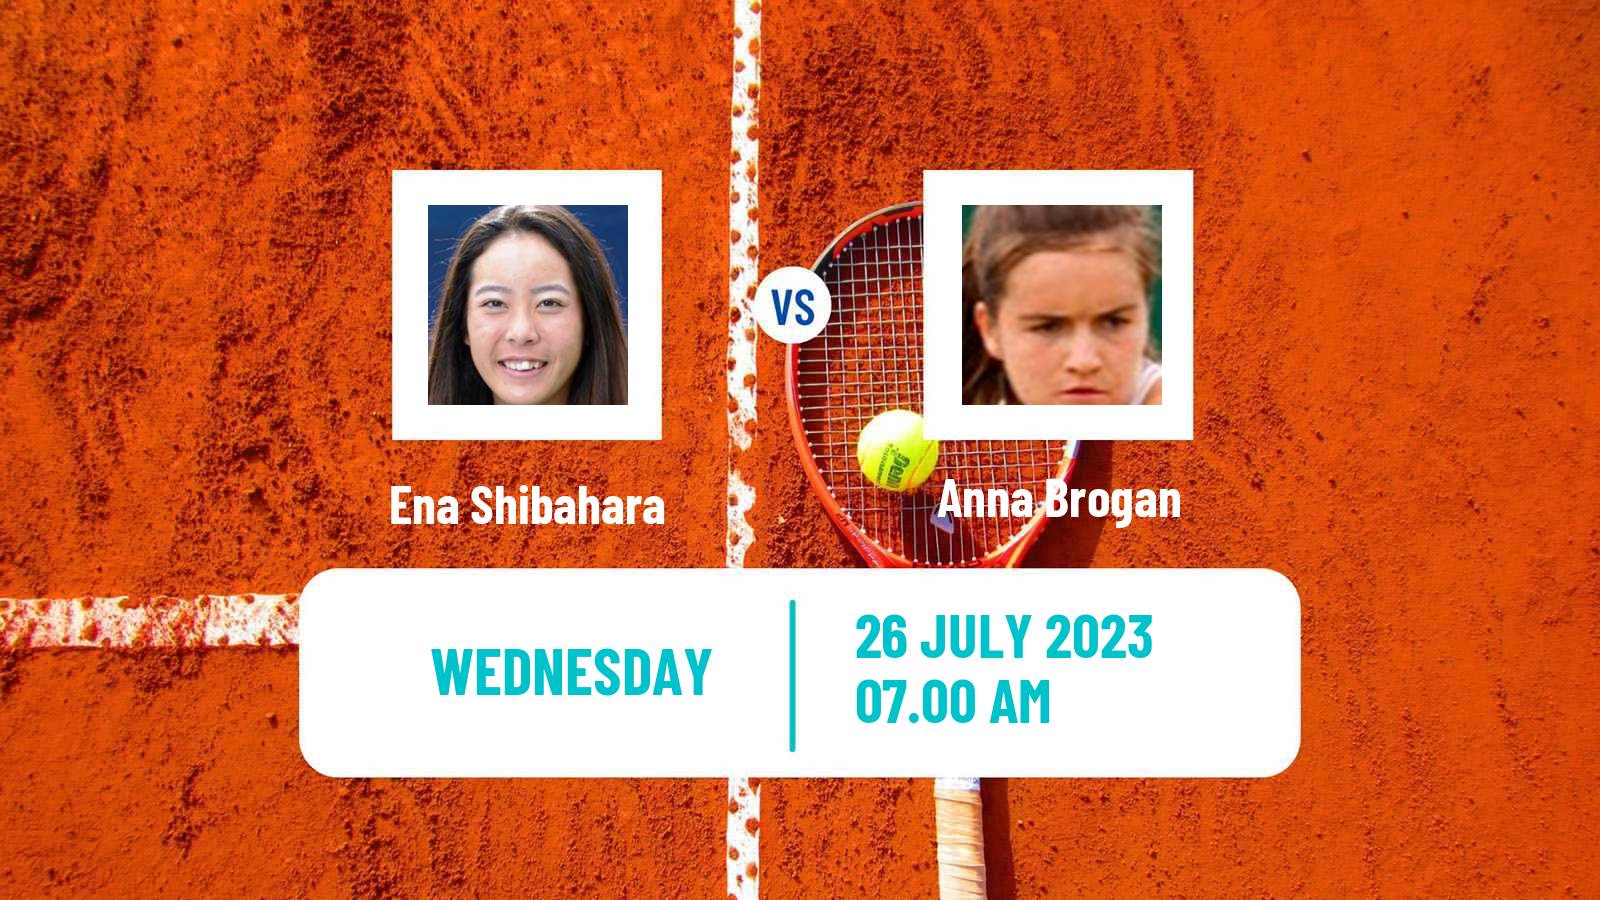 Tennis ITF W25 El Espinar Segovia Women Ena Shibahara - Anna Brogan